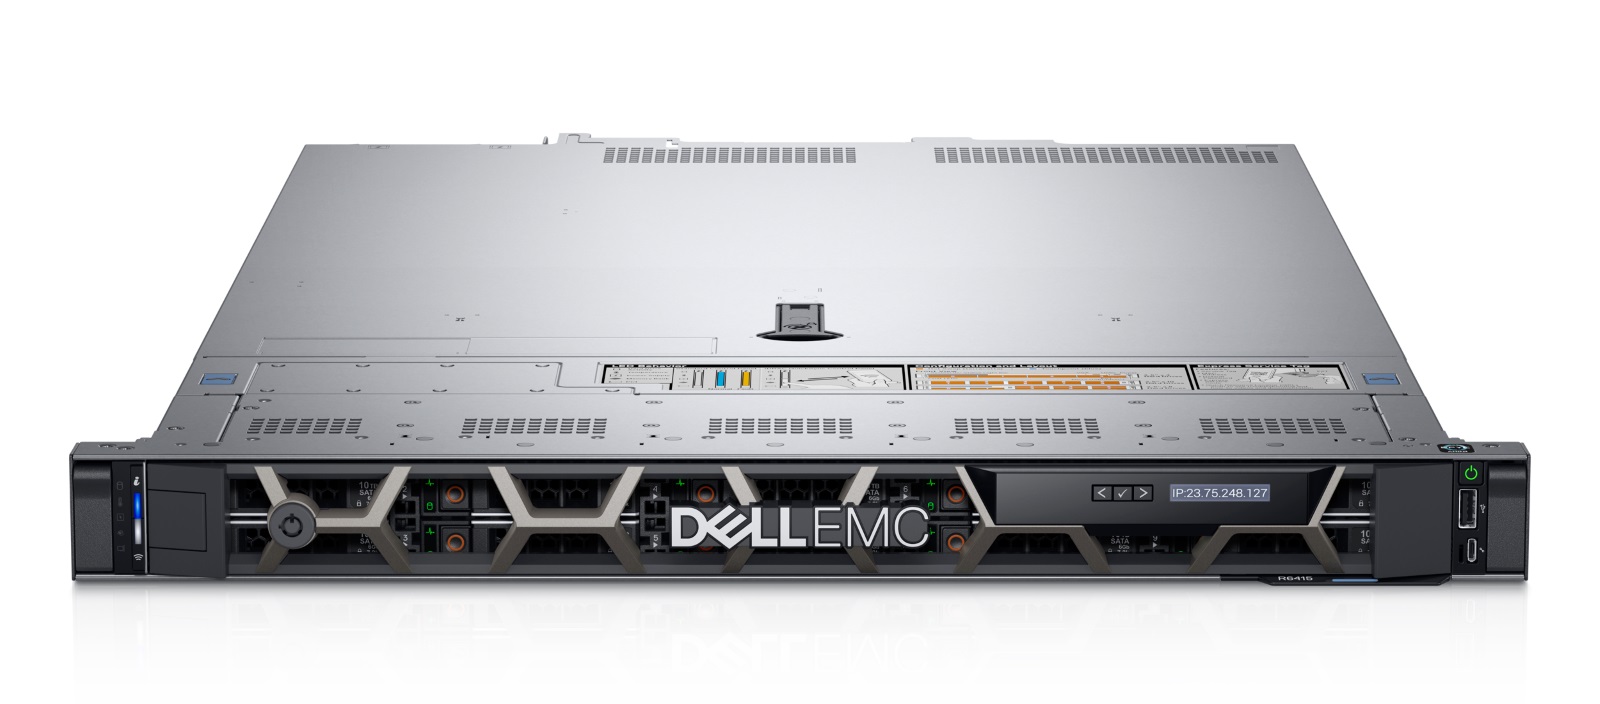 Dell EMC、第14世代「Dell EMC PowerEdge」サーバーに6機種のモデルを 